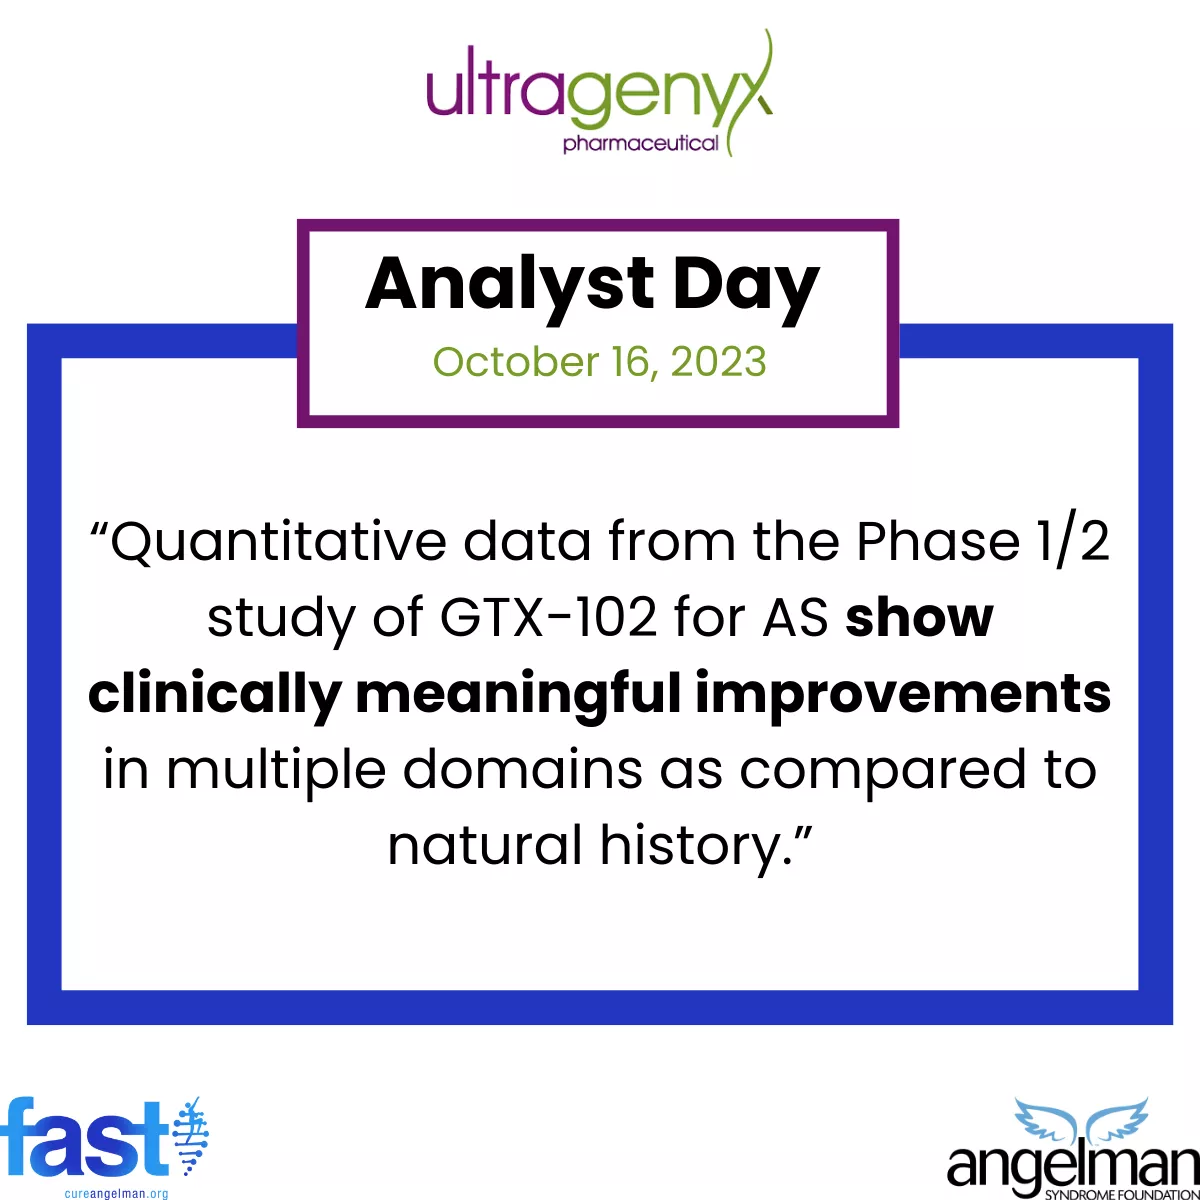 Ultragenyx Pharma analyst day October 2023